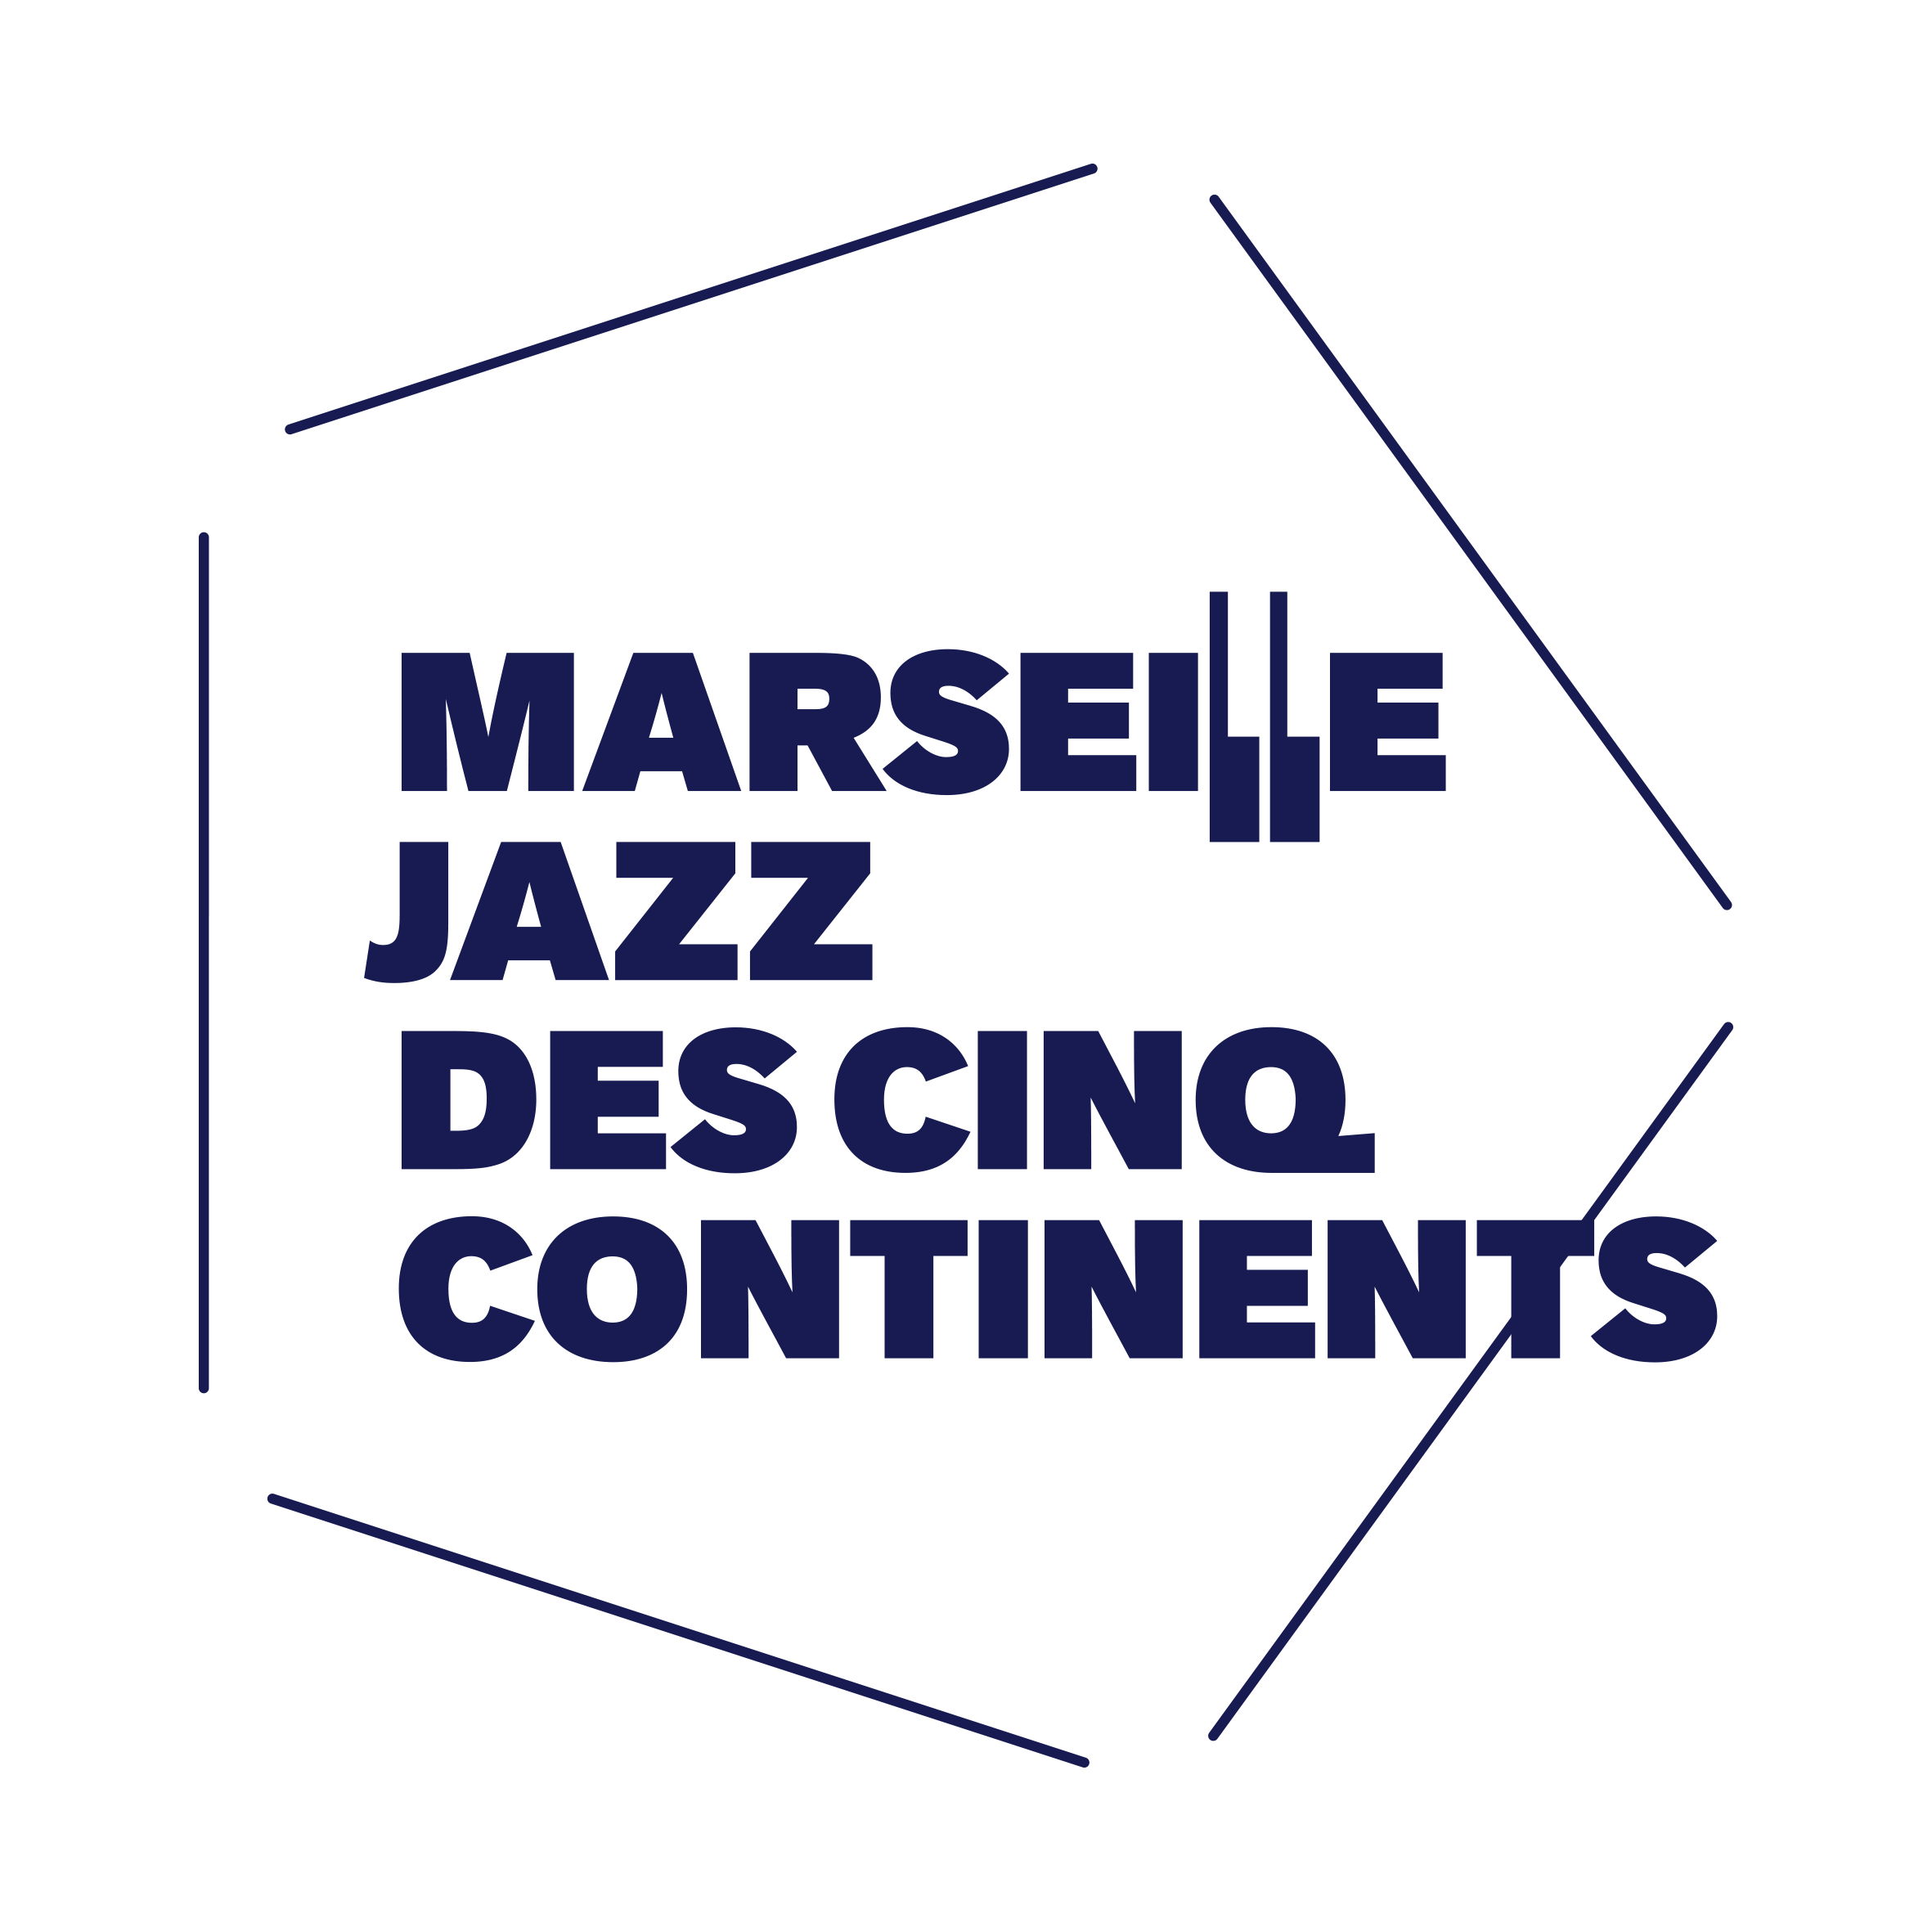 Marseille Jazz des 5 continents